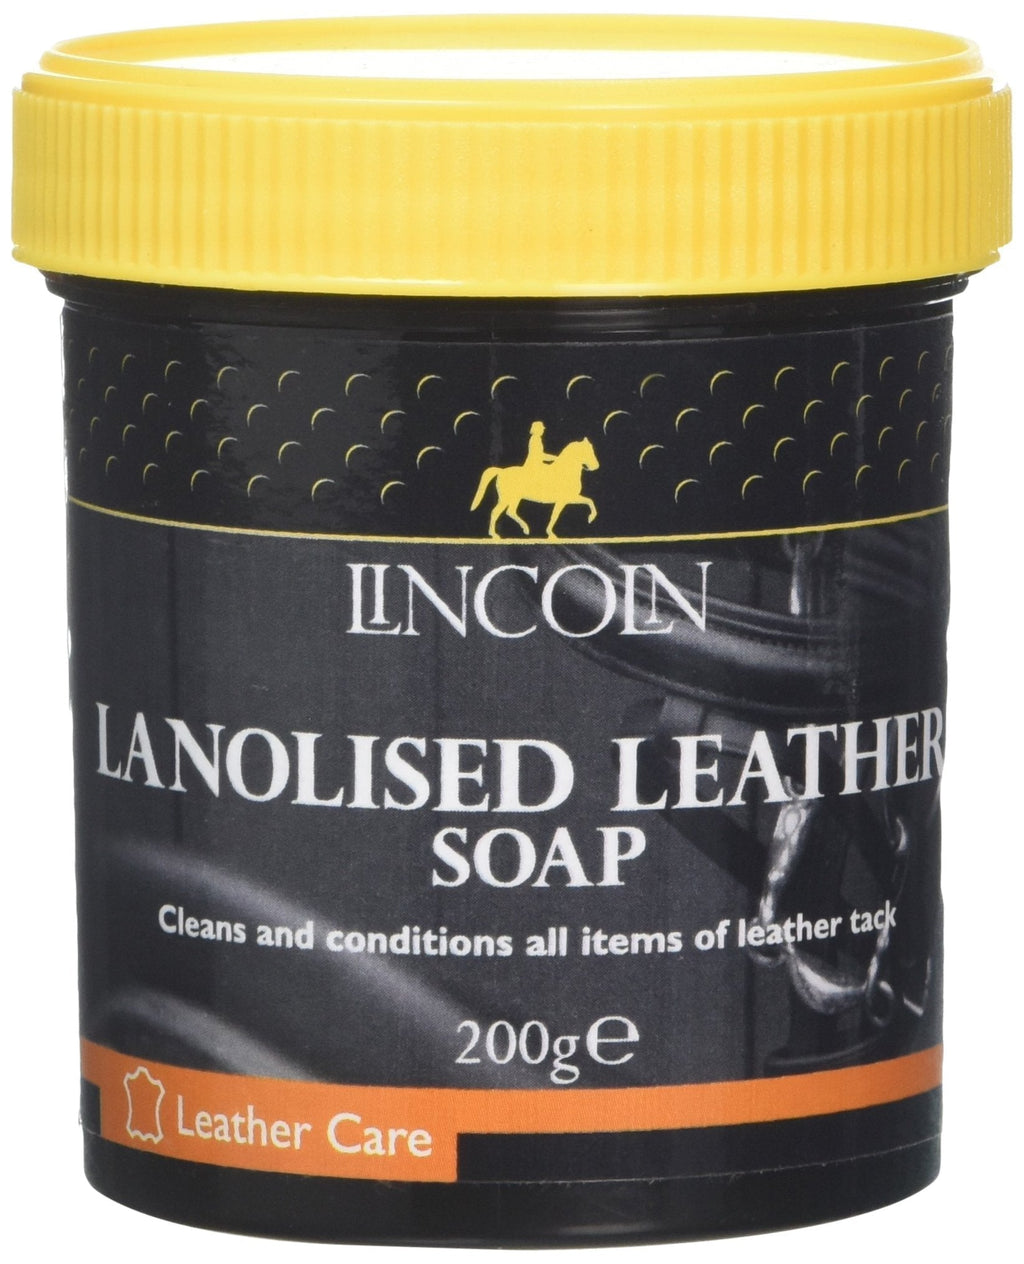 LINCOLN Lanolised Leather Saddle Soap, 200 g - PawsPlanet Australia